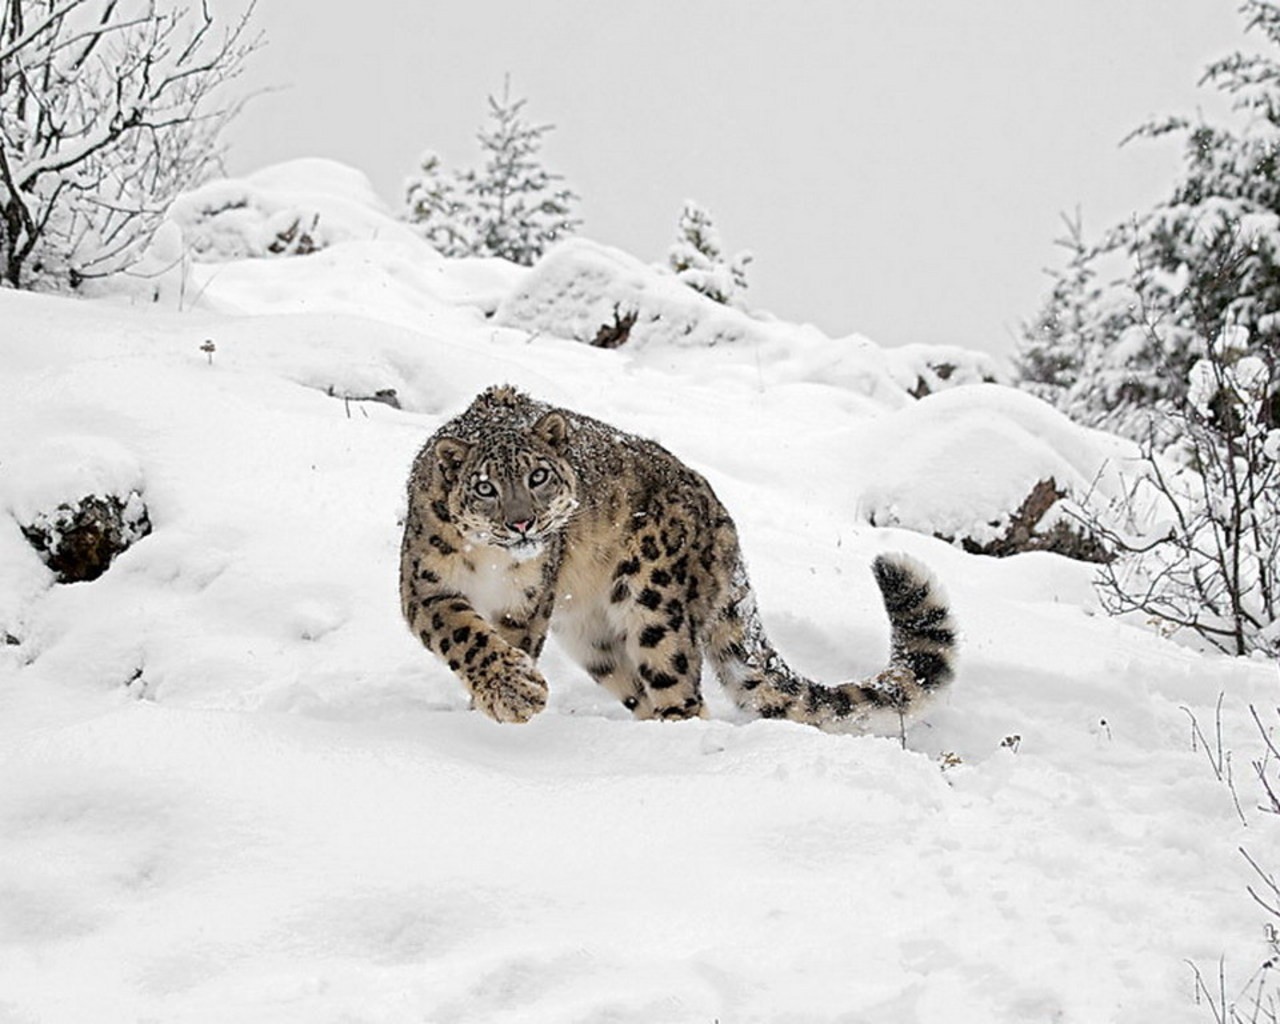 General 1280x1024 animals snow big cats mammals winter outdoors